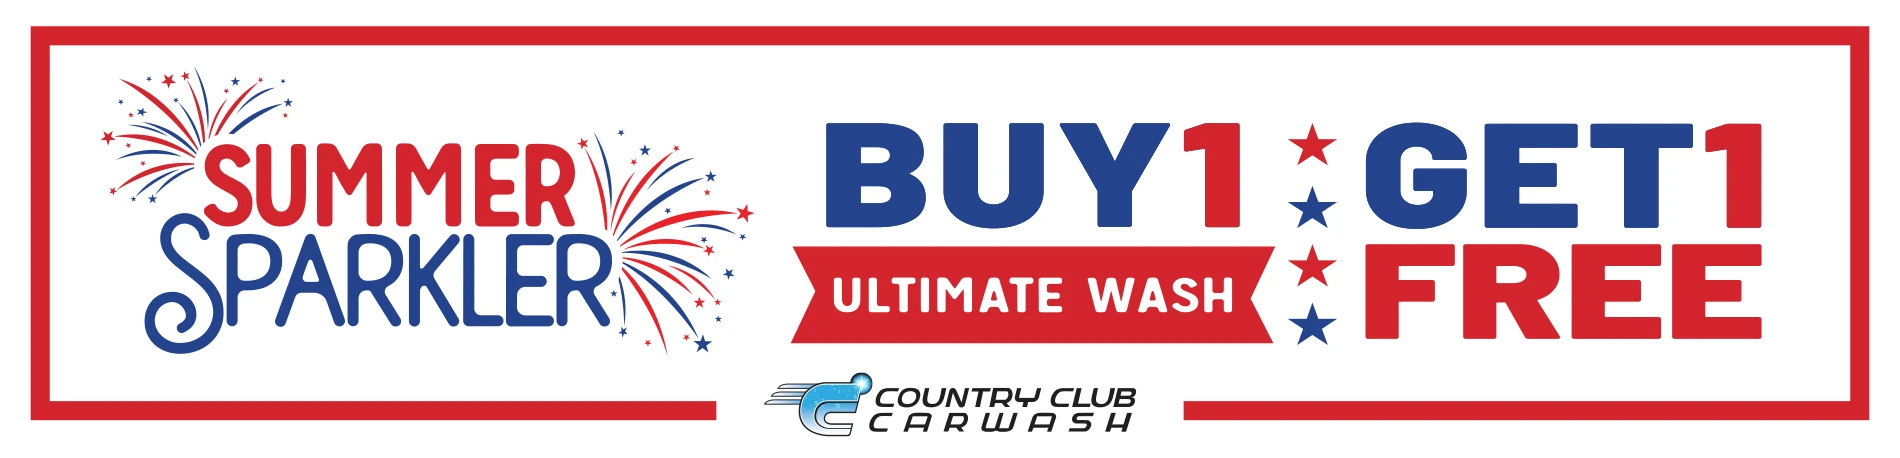 Summer Sparkler Sale - Buy 1 Ultimate Wash, Get 1 Free!